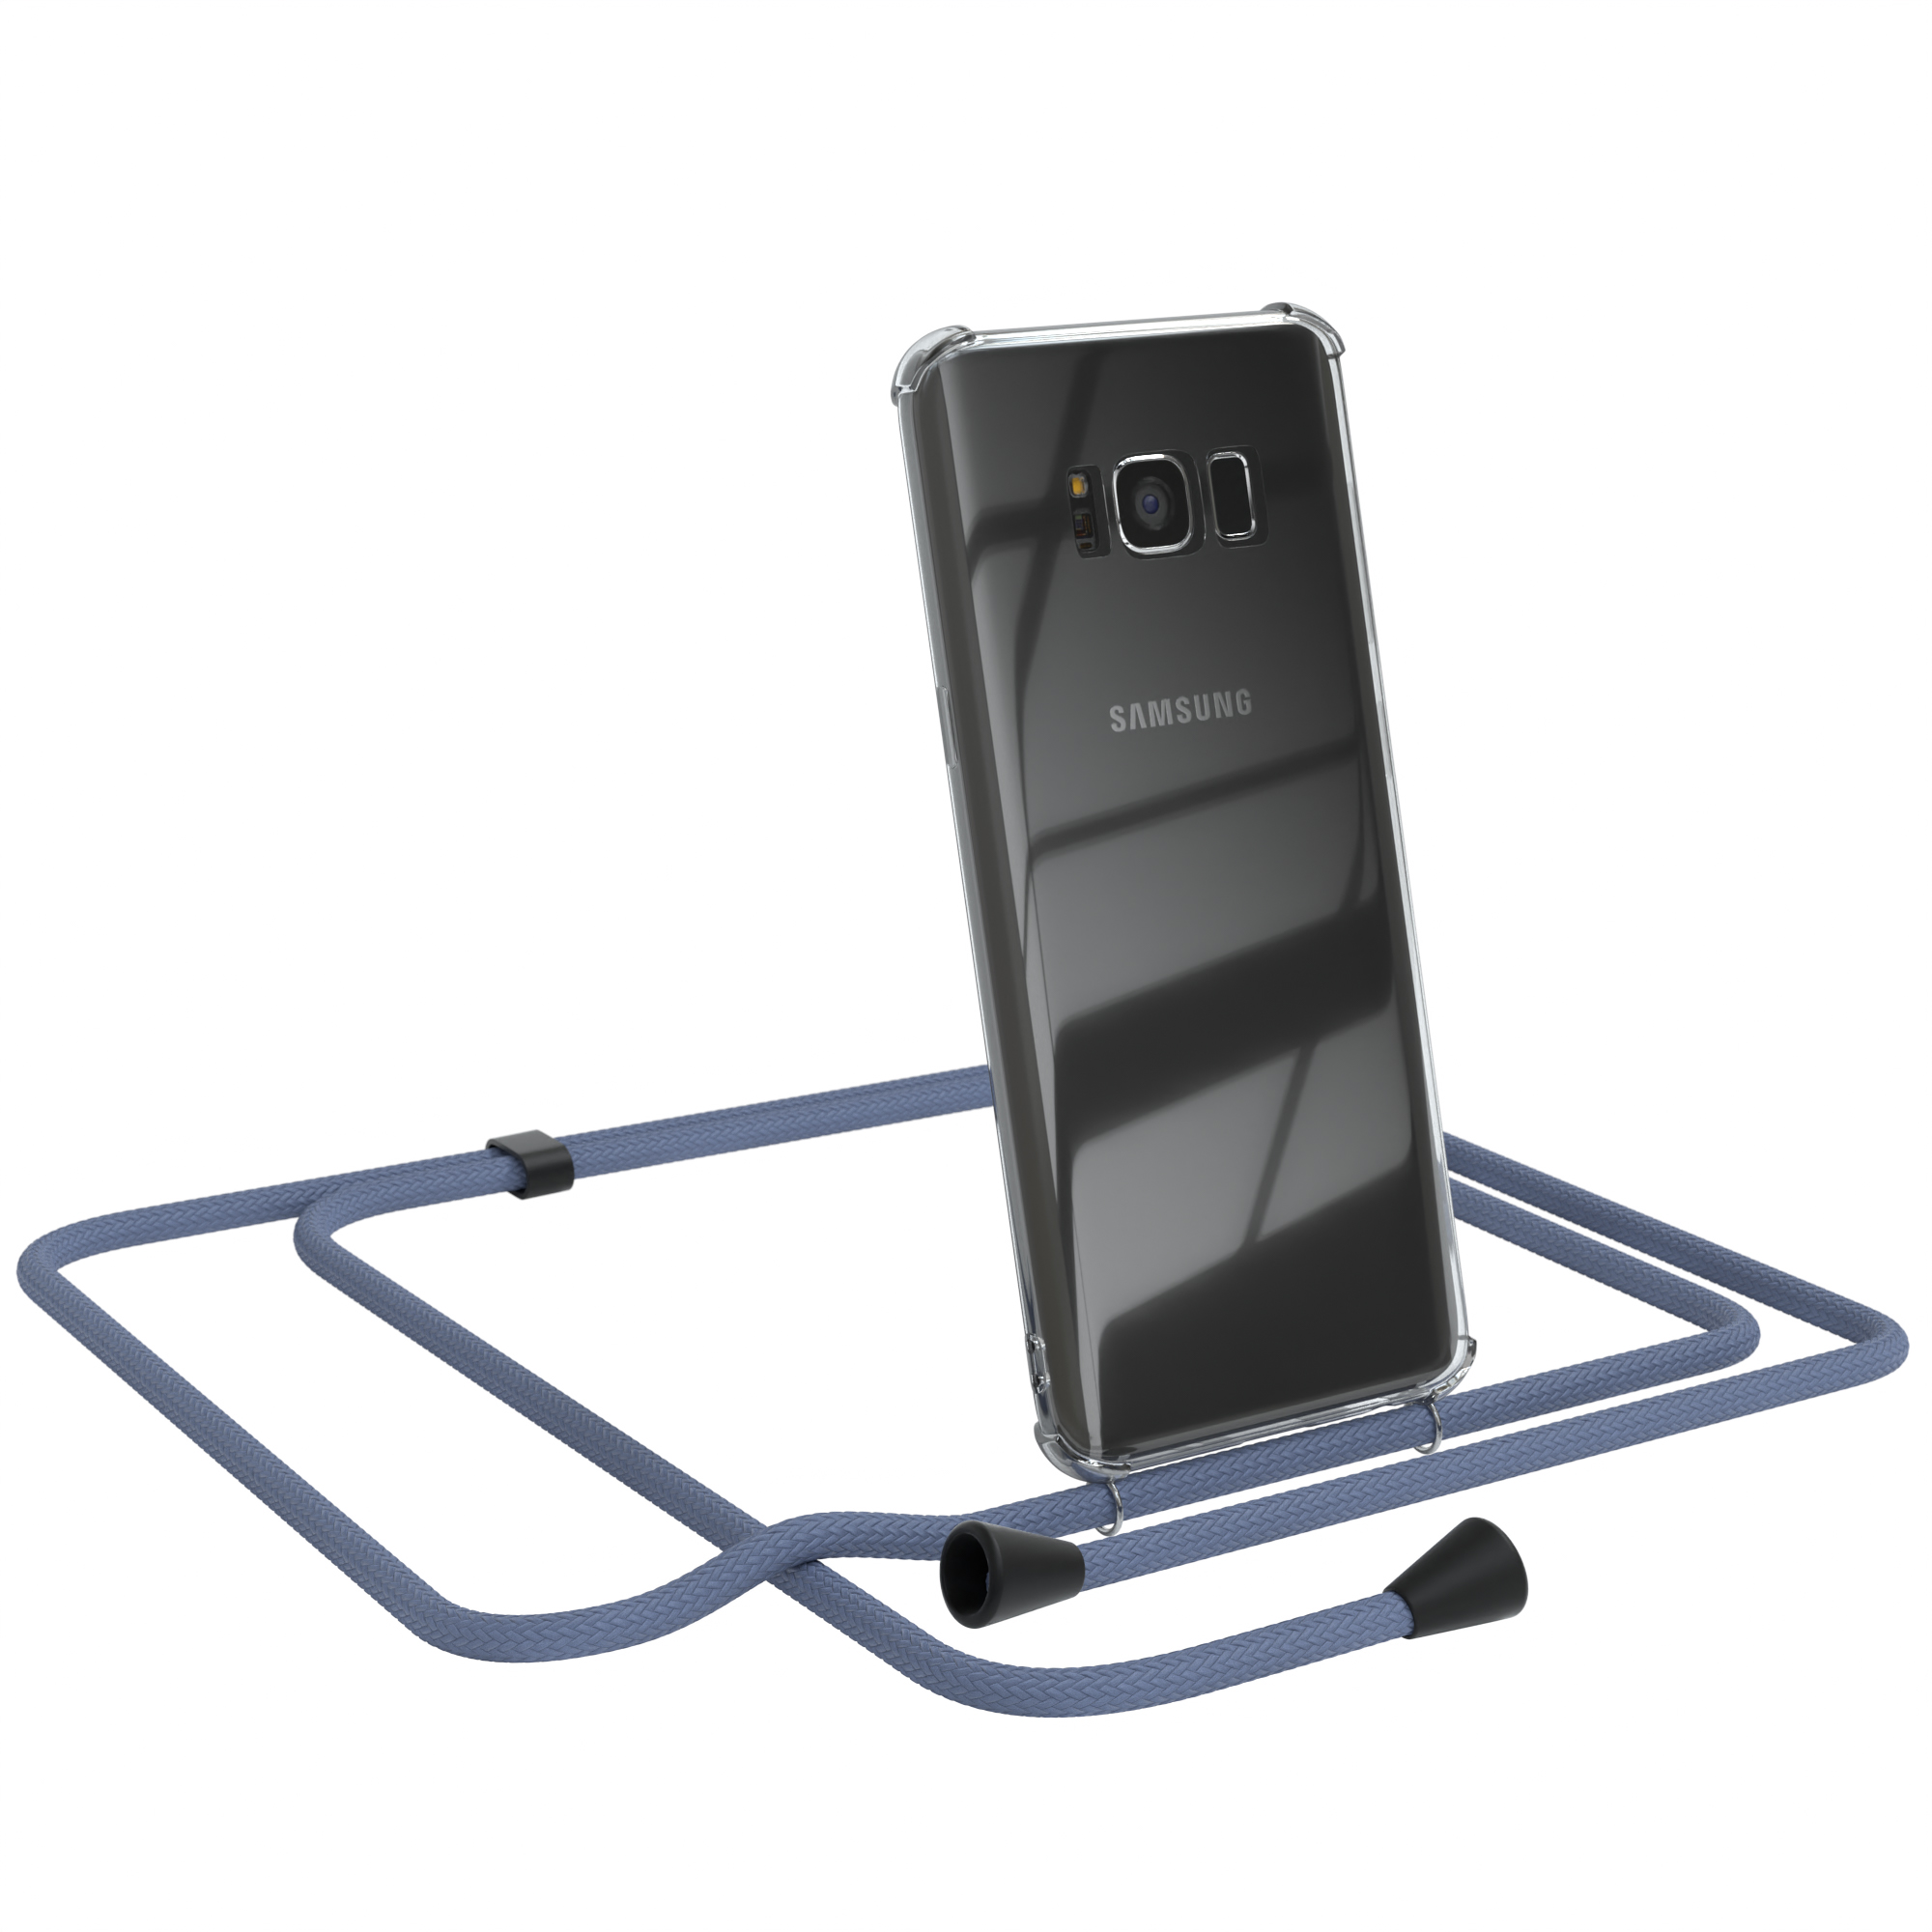 EAZY CASE Clear Cover mit Samsung, Umhängetasche, S8, Umhängeband, Blau Galaxy